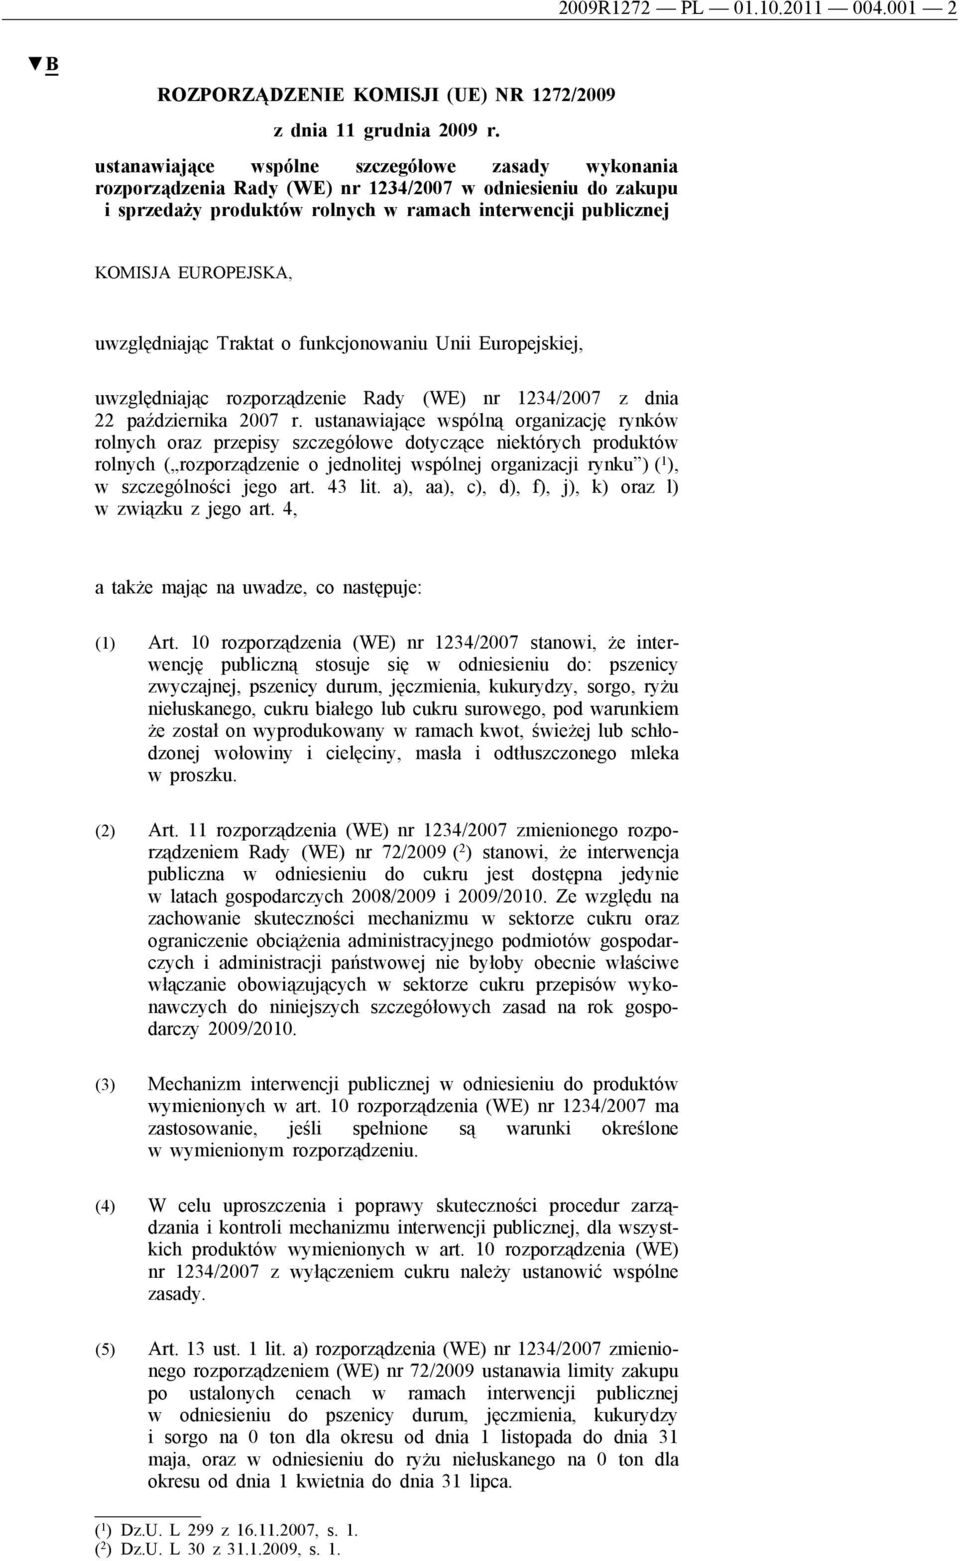 uwzględniając Traktat o funkcjonowaniu Unii Europejskiej, uwzględniając rozporządzenie Rady (WE) nr 1234/2007 z dnia 22 października 2007 r.